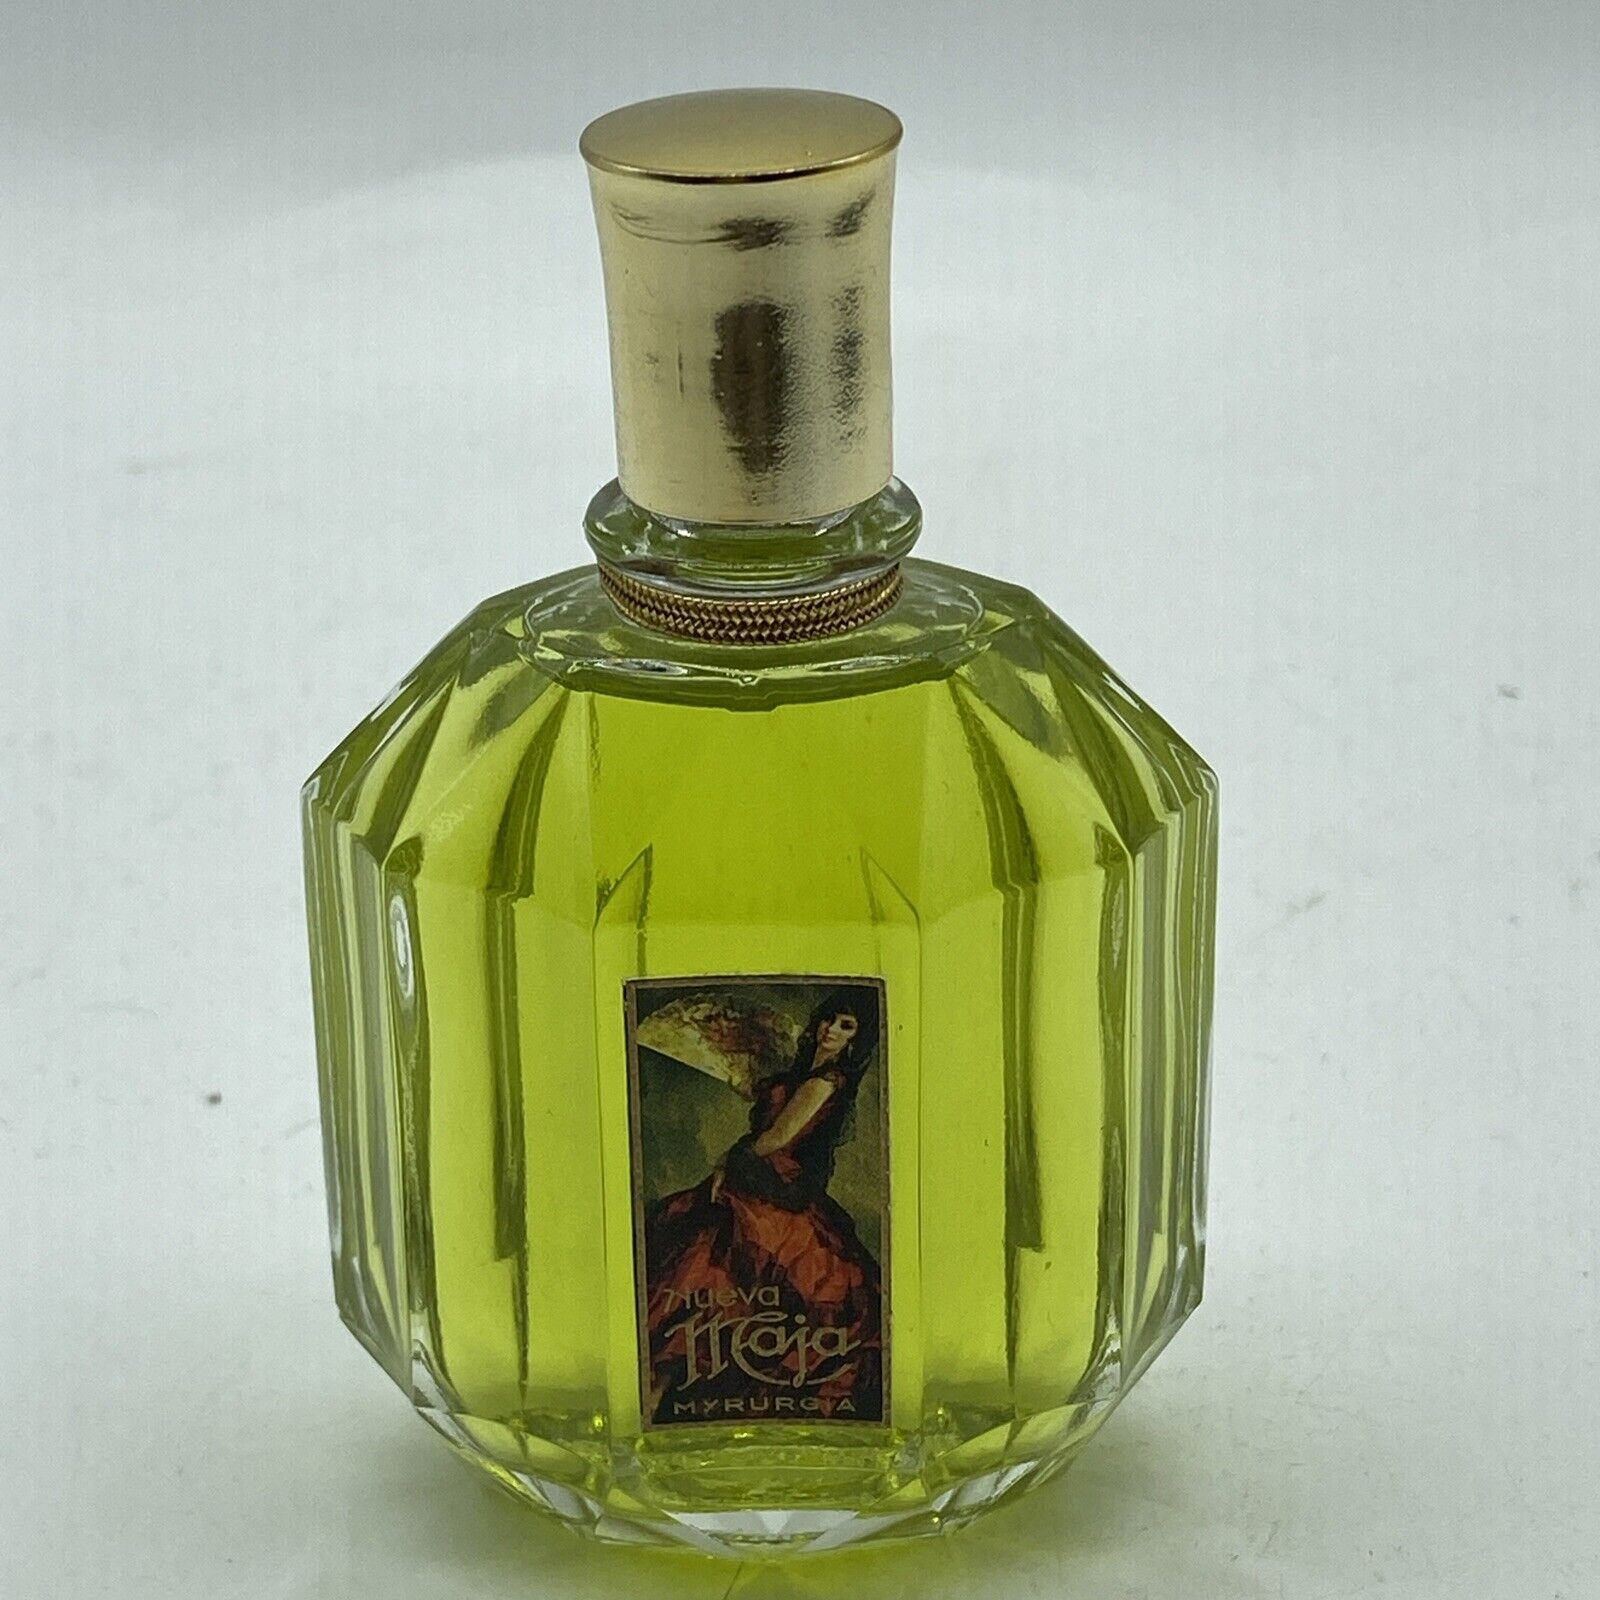 Vintage Nueva Maja Myrurgia Perfume 1 Oz Bottle Full